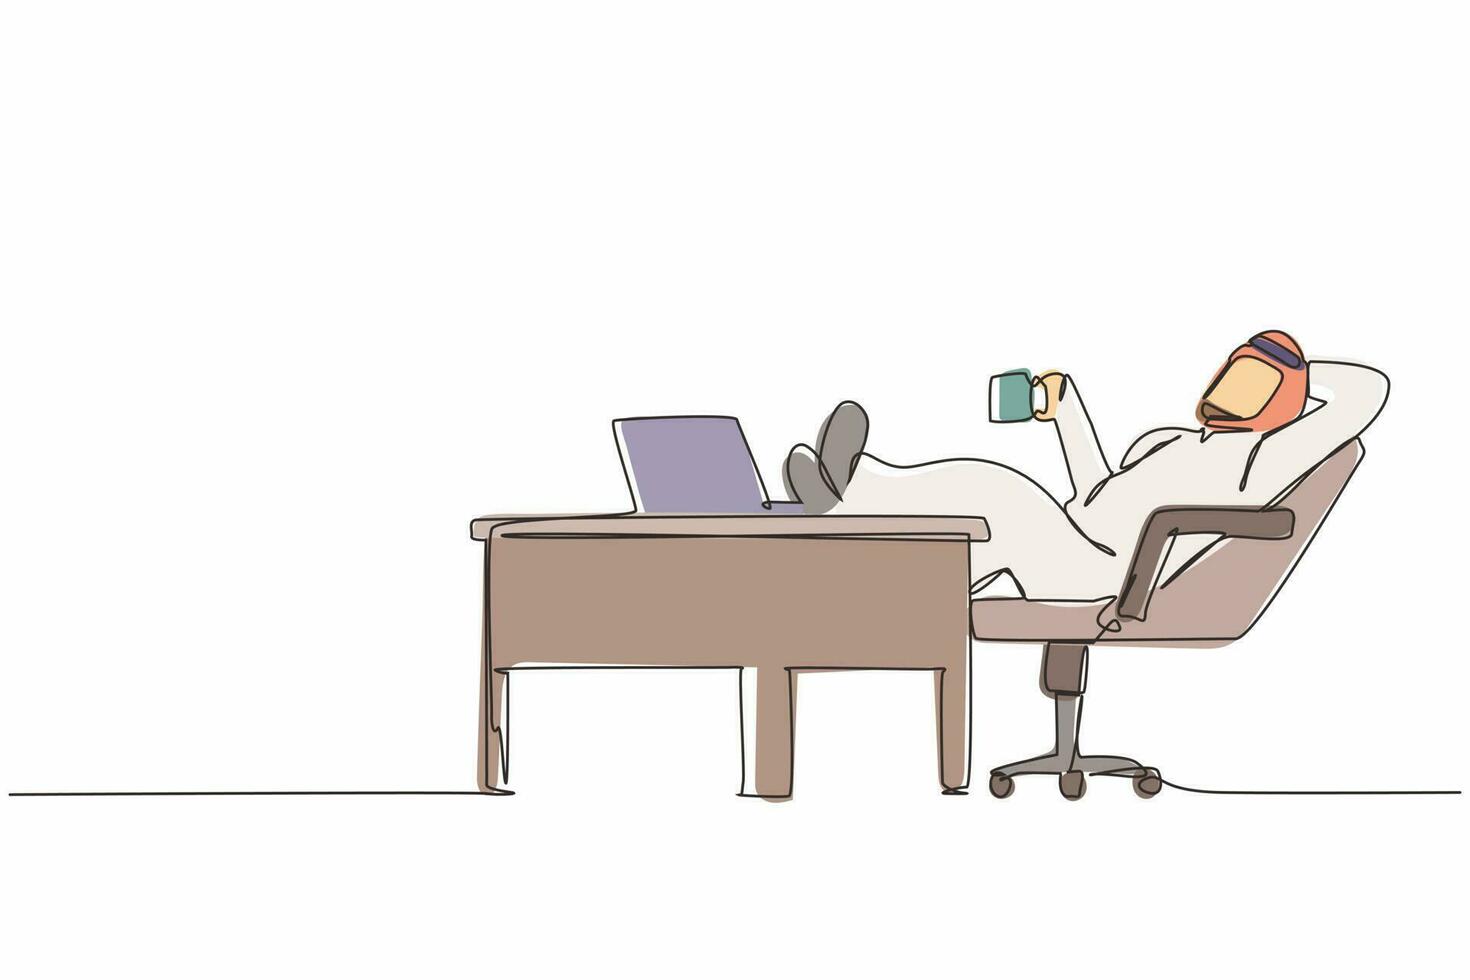 einzelne durchgehende strichzeichnung arabischer geschäftsmann arbeitet entspannt am schreibtisch und trinkt kaffee. flaches design des mitarbeitercharakters, der mit laptop-computer arbeitet. eine linie zeichnen grafische vektorillustration vektor